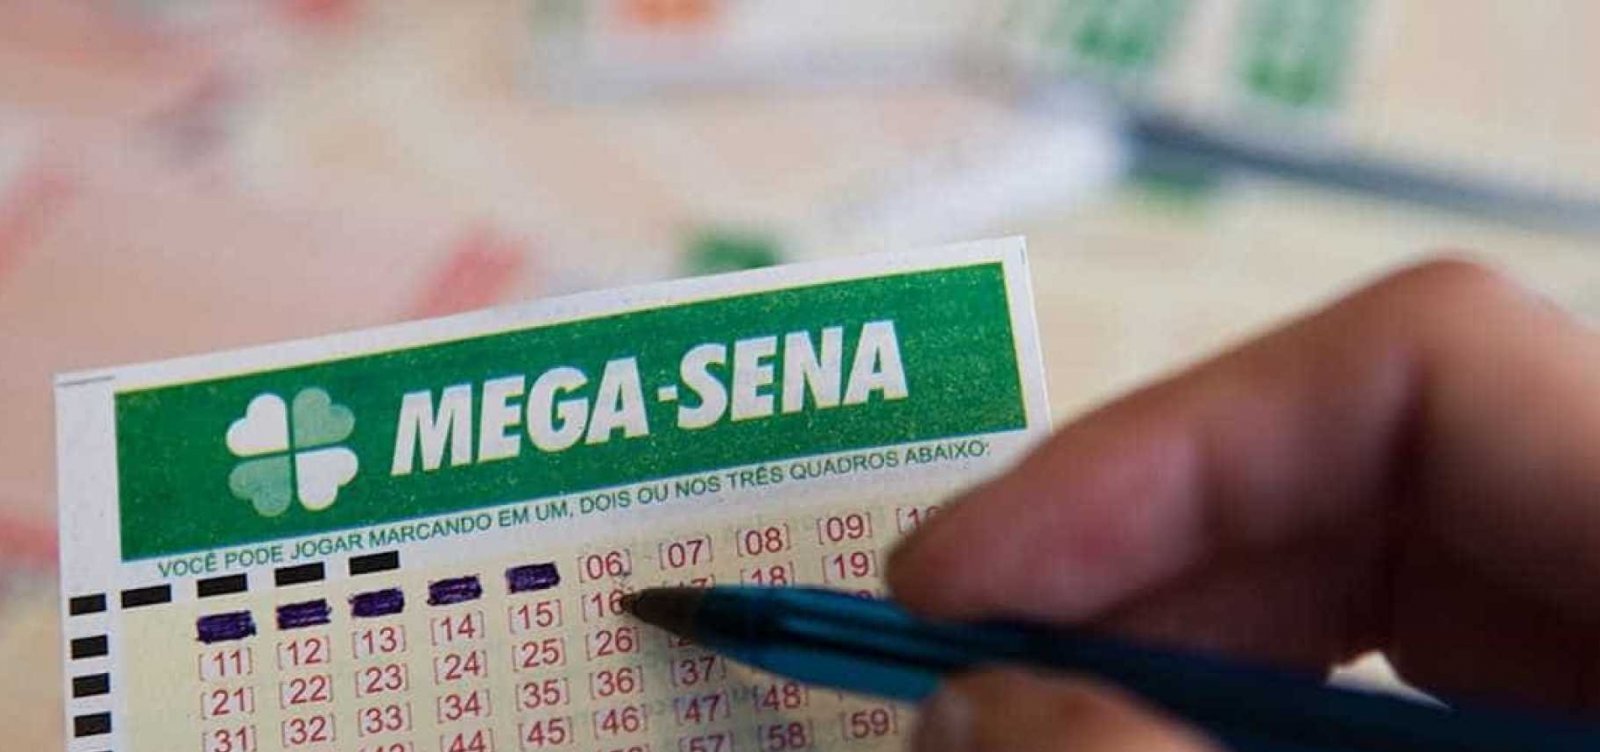 Morador de cidade baiana acerta as seis dezenas e ganha R$ 2,5 mi na Mega-Sena